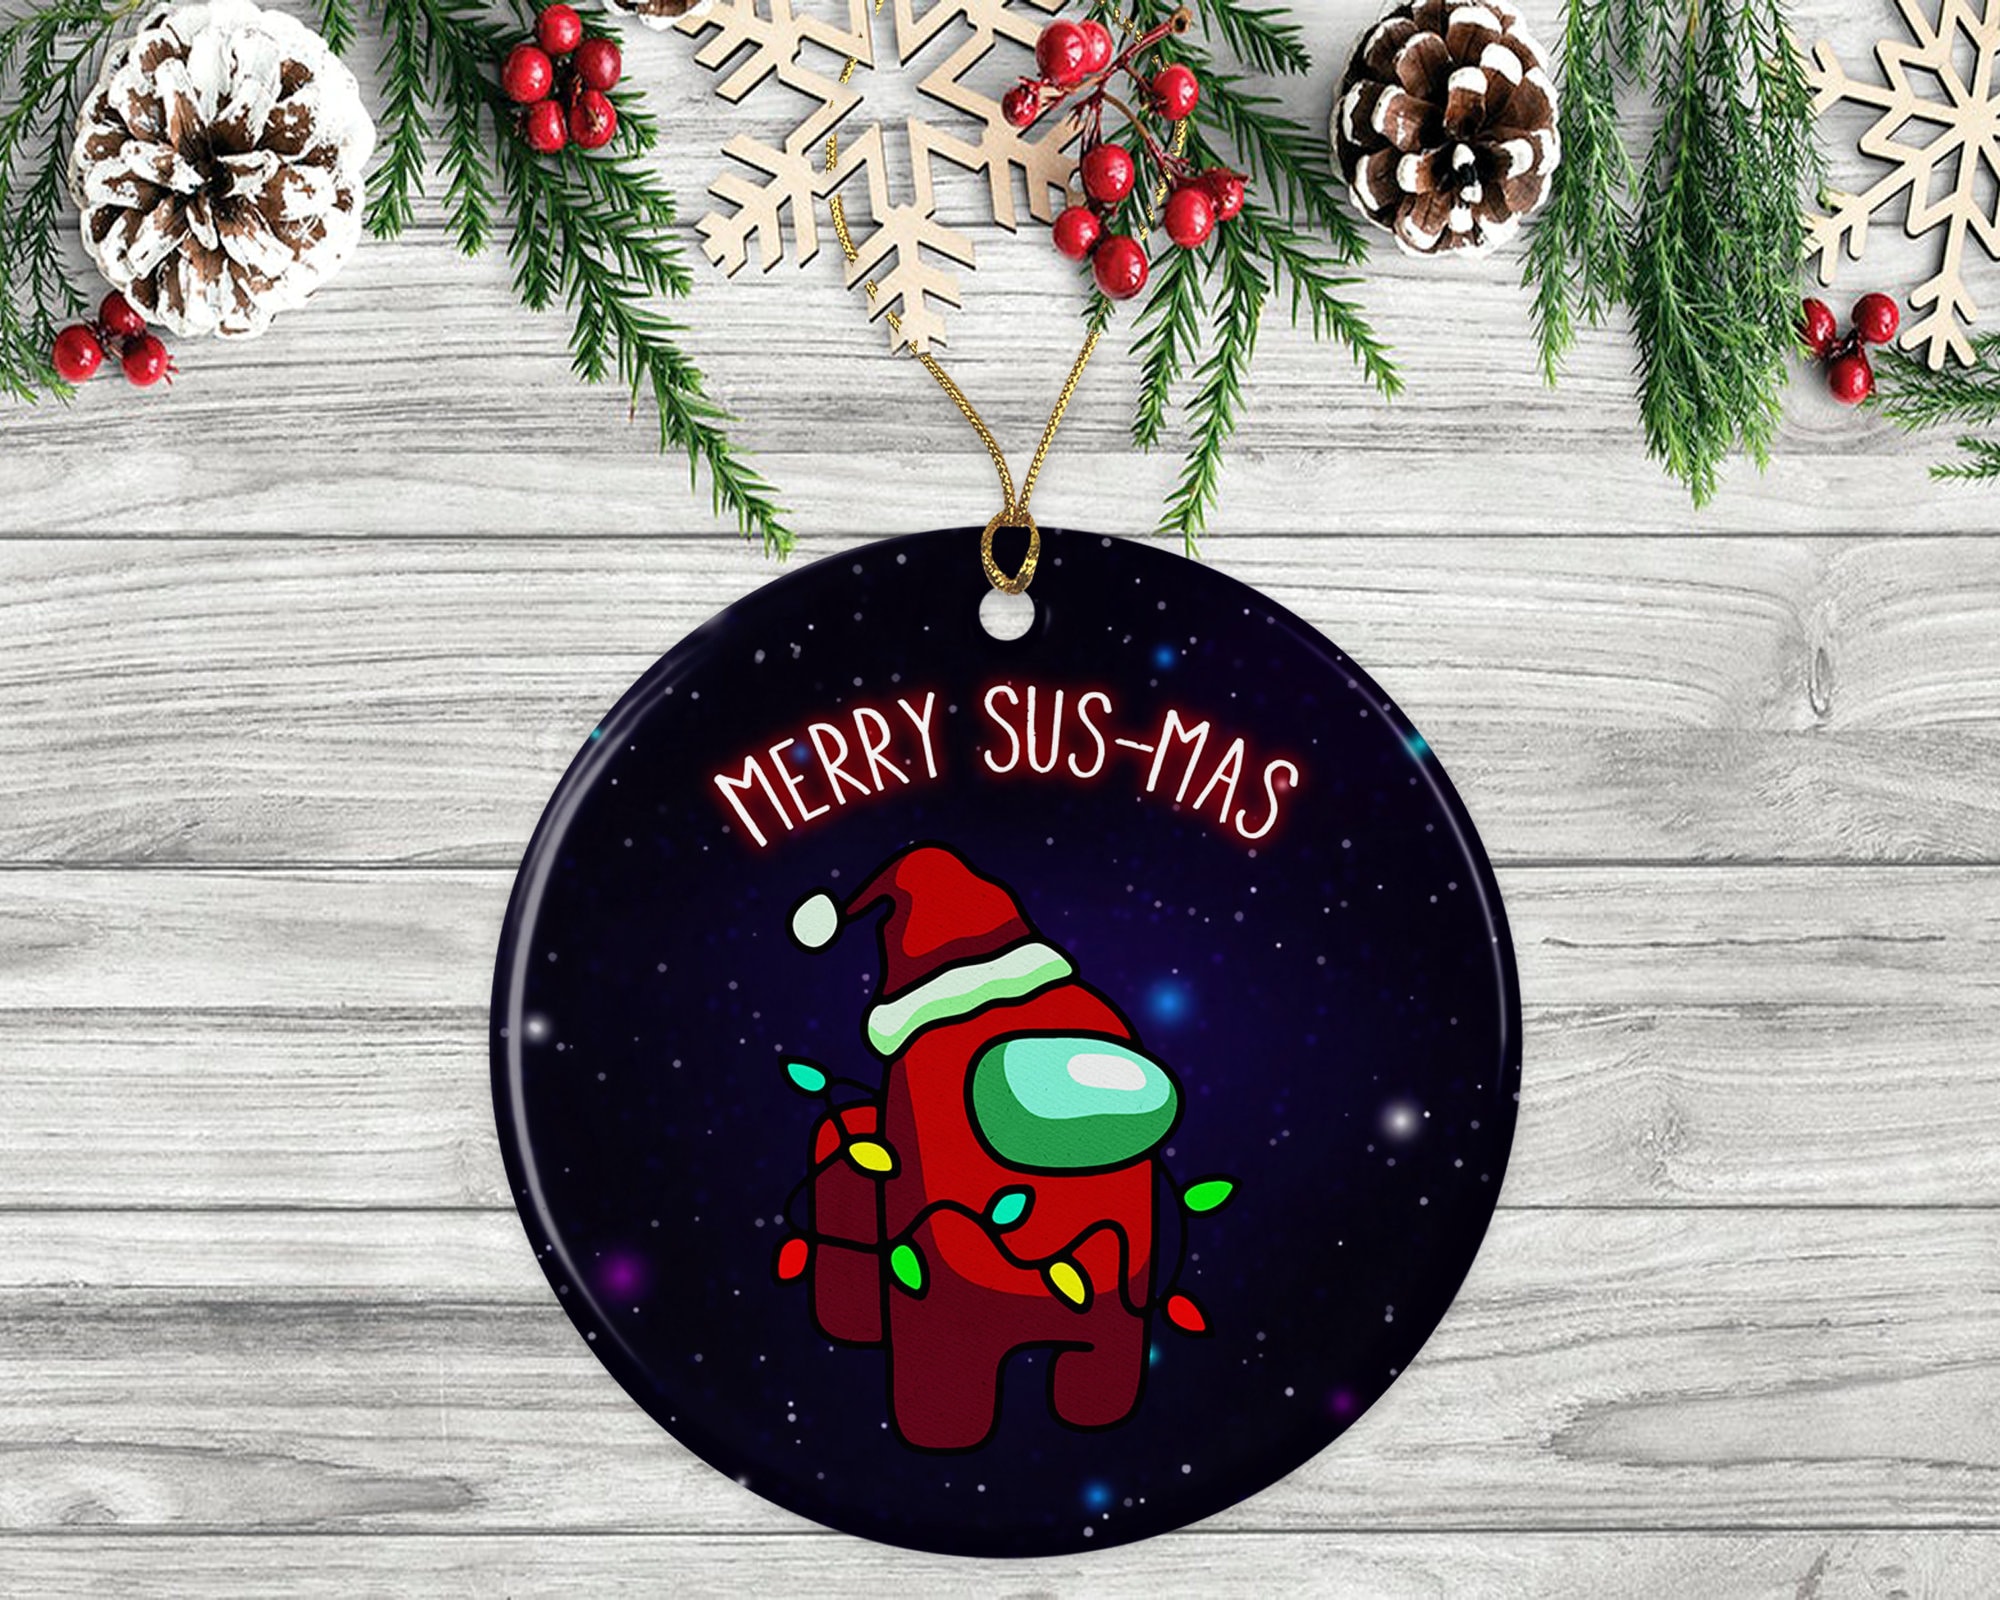 Merry Susmas Among Us Christmas Ornament